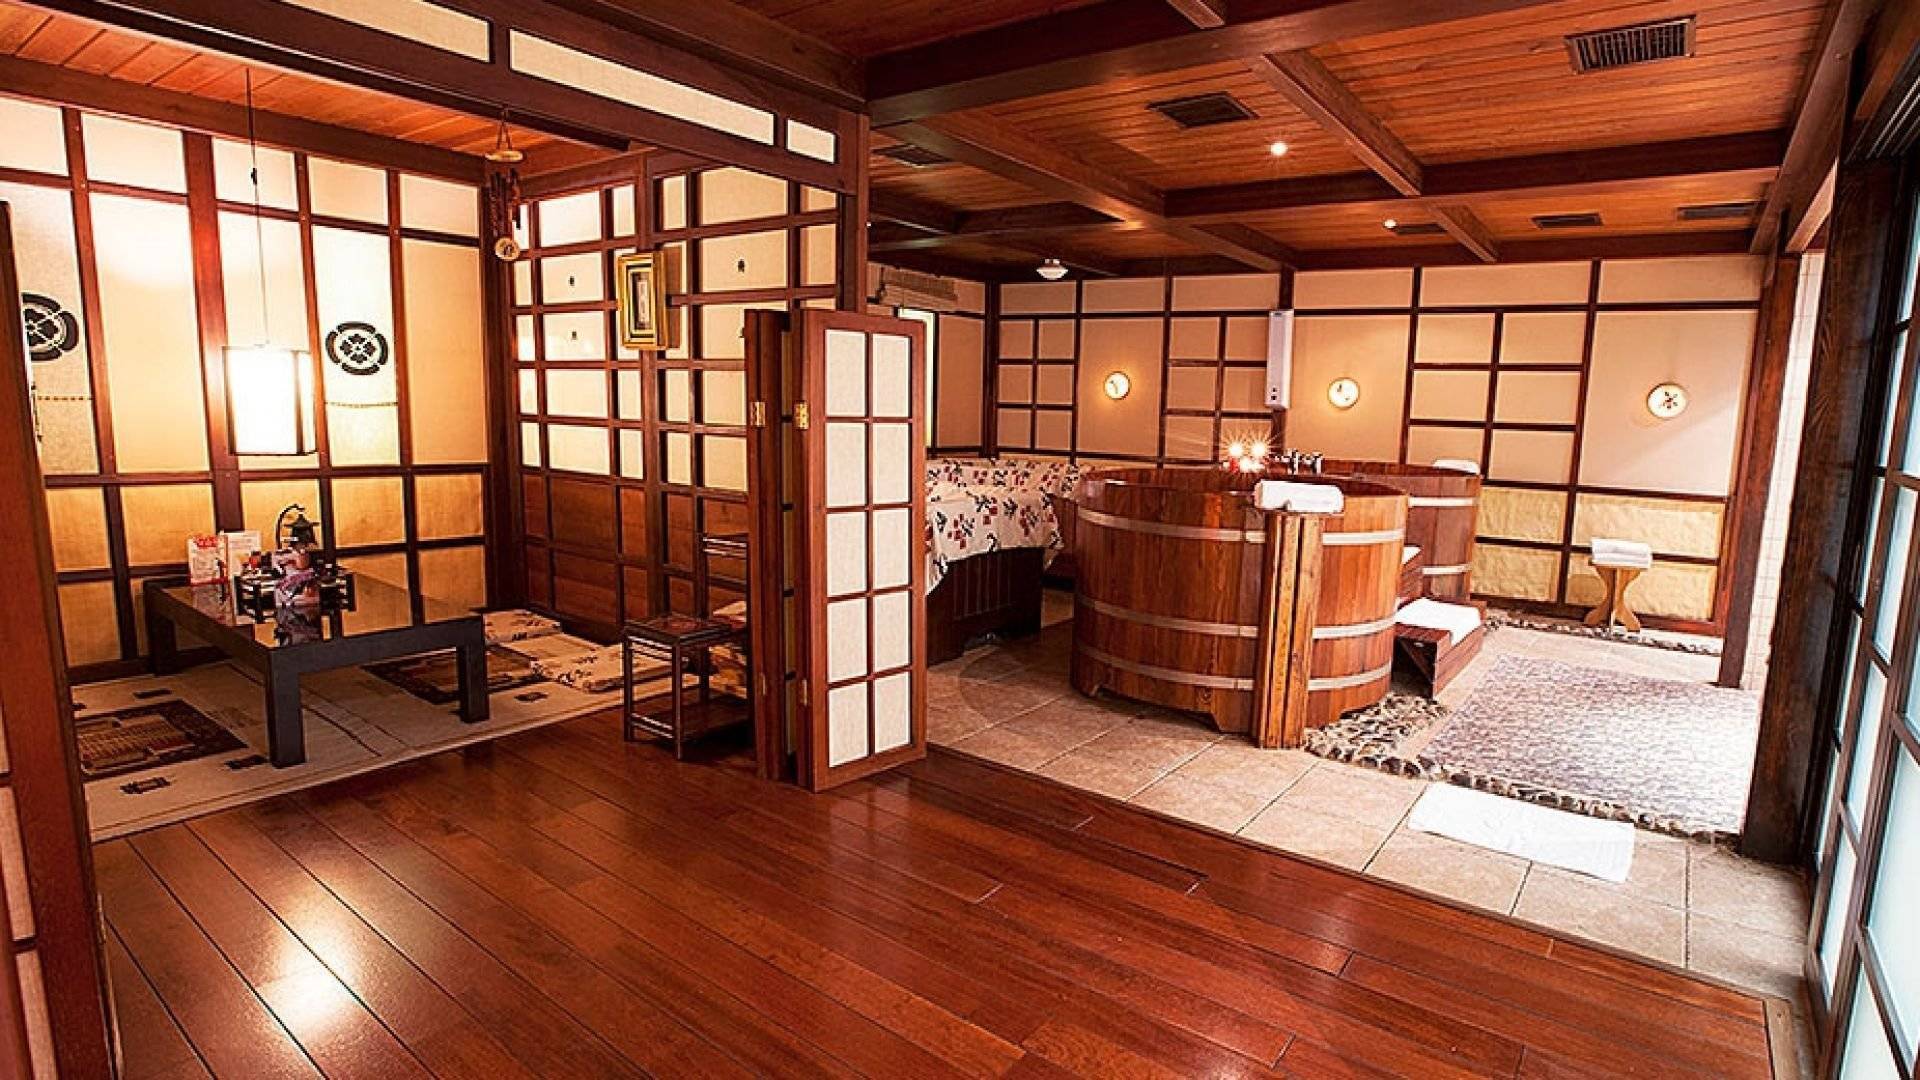 Японская баня офуро: вековые традиции восточной бани